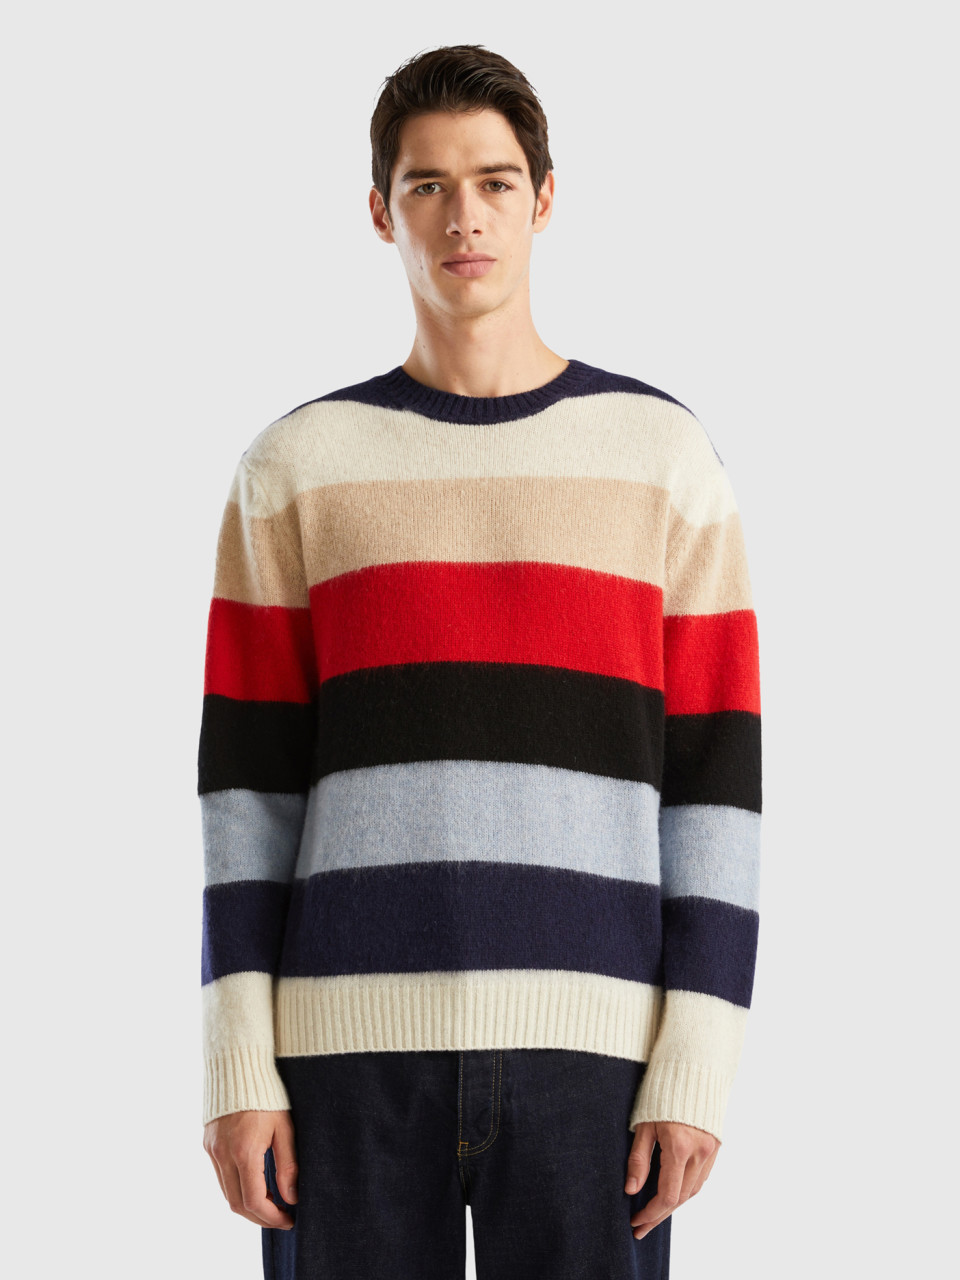 Benetton, Striped Sweater In Pure Shetland Wool, Multi-color, Men